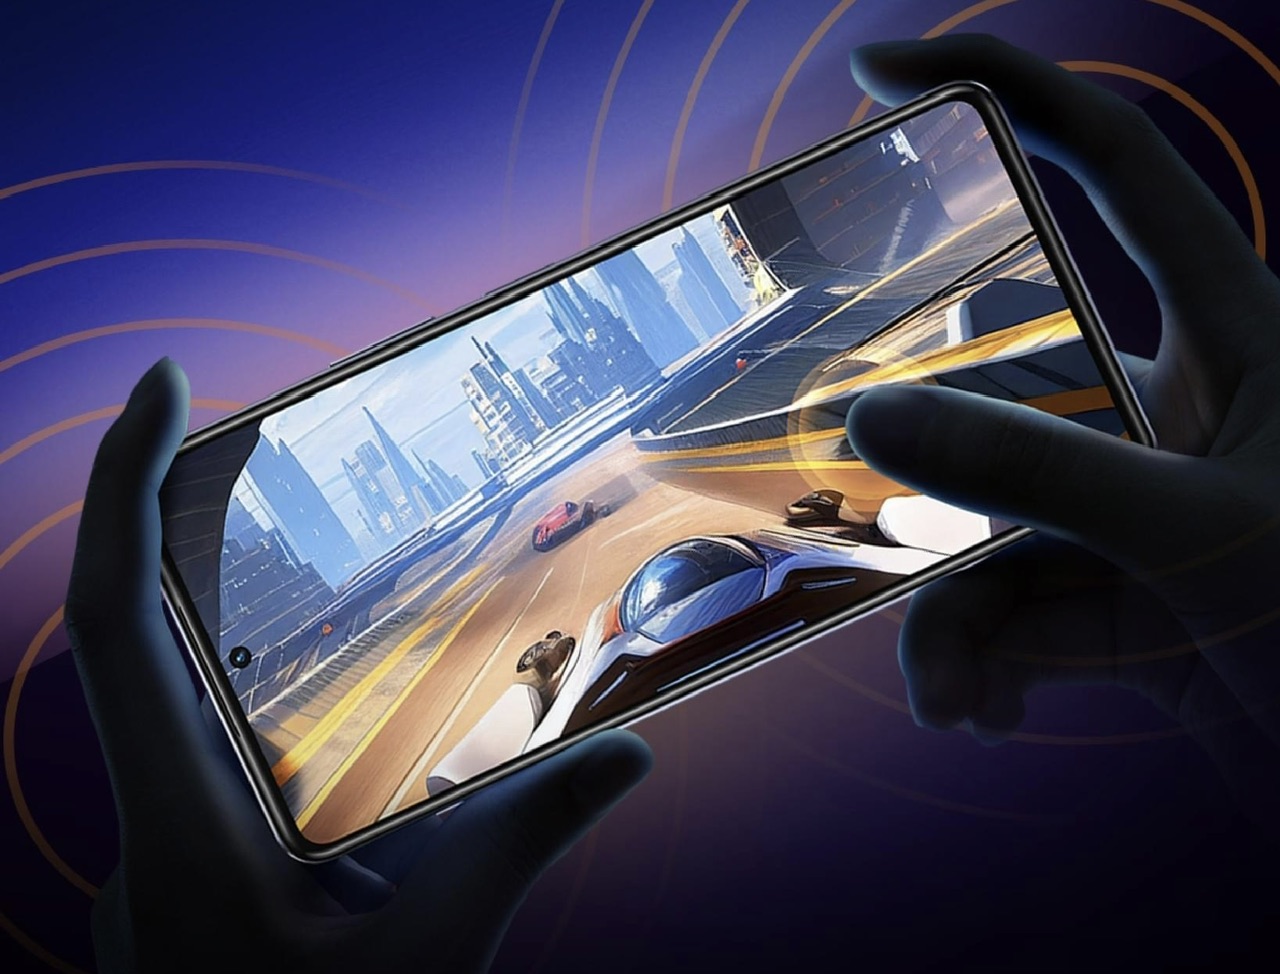 Telefon pintar gaming terbaik pada harga bajet - Infinix NOTE 30 Pro kini ditawarkan pada harga dibawah RM 900 13